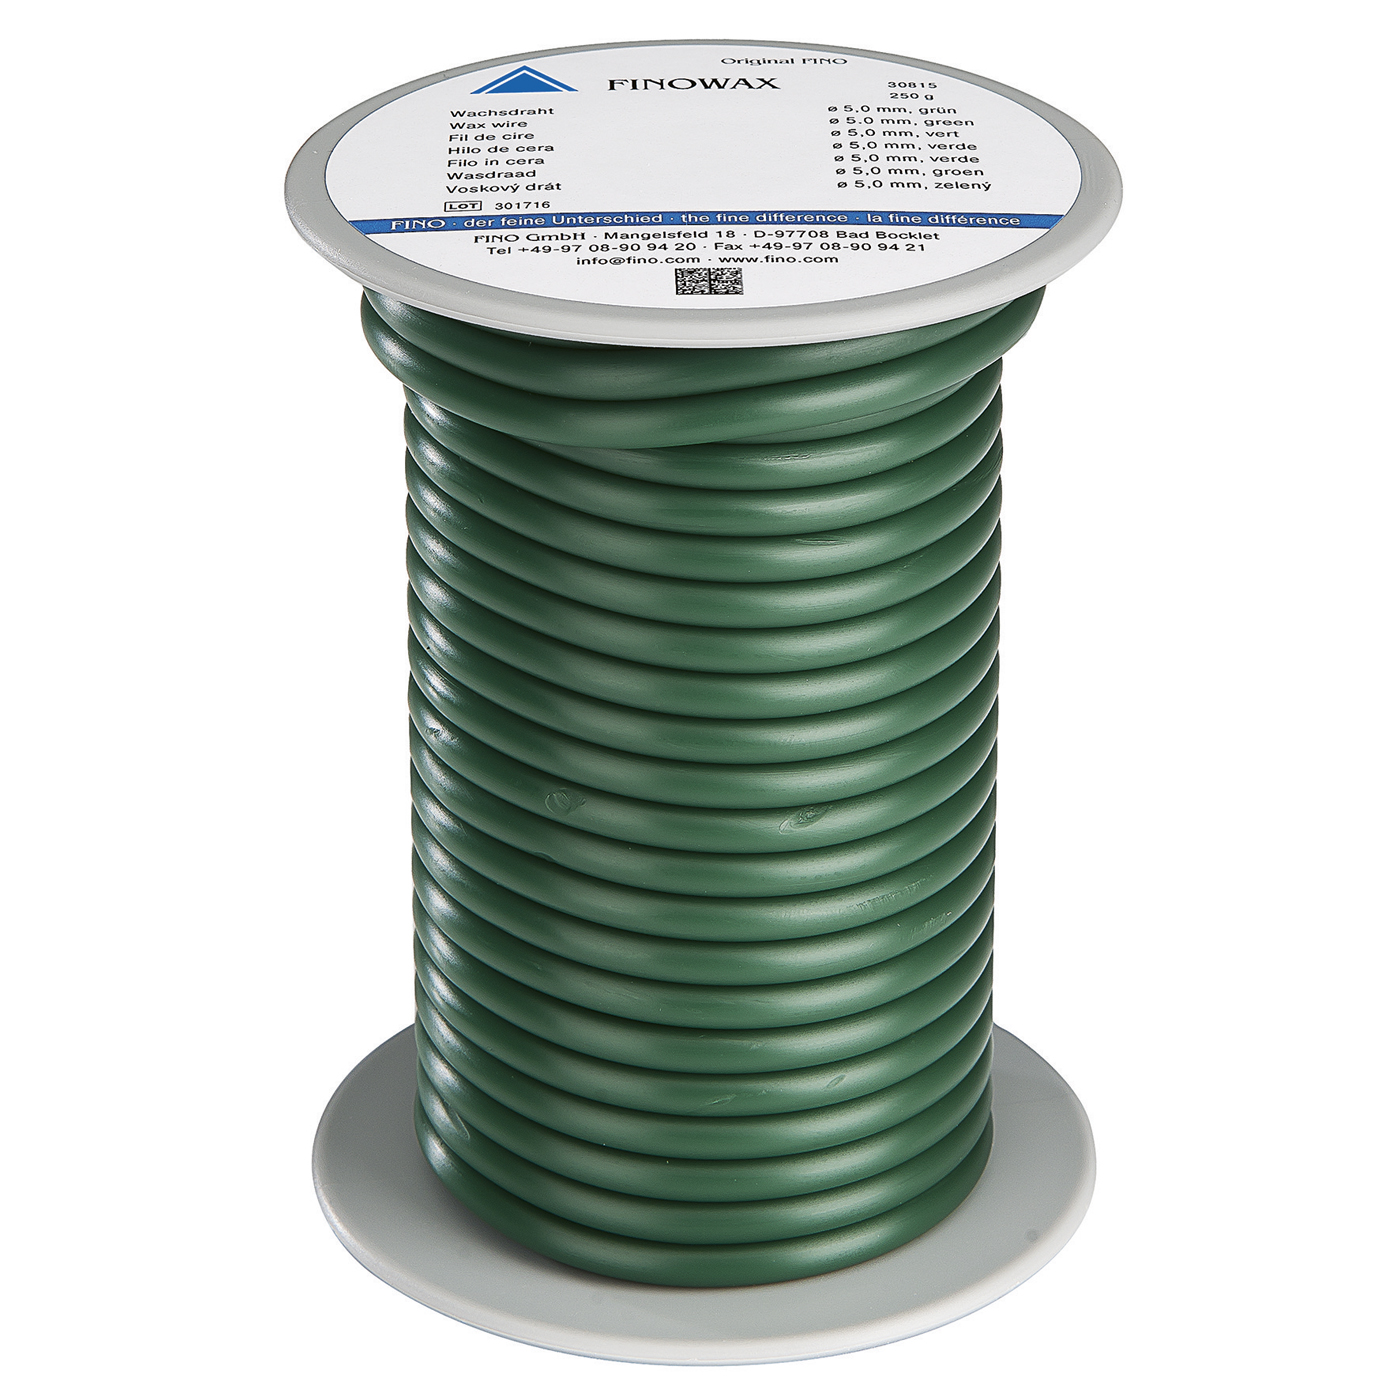 FINOWAX Wax Wire, ø 5.0 mm, Medium Hard, Green - 250 g